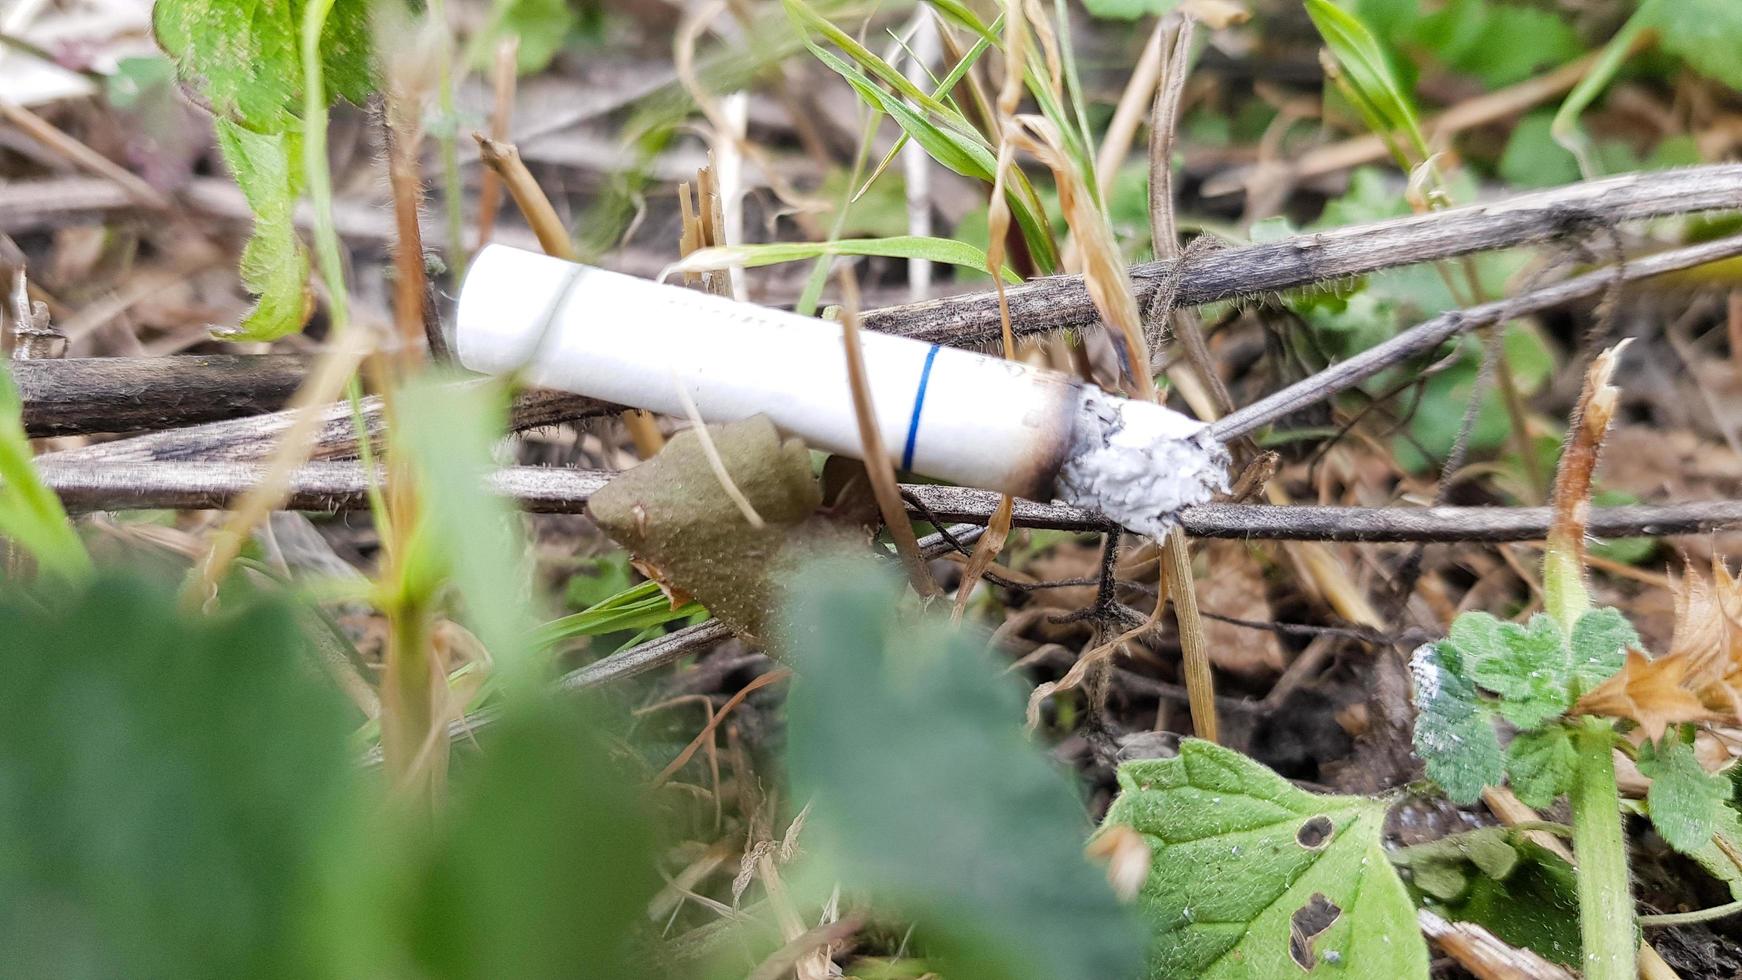 sigaret per ongeluk in droog gras gegooid. sigarettenpeuk in een groene weide gegooid, vervuilende natuur en milieu foto